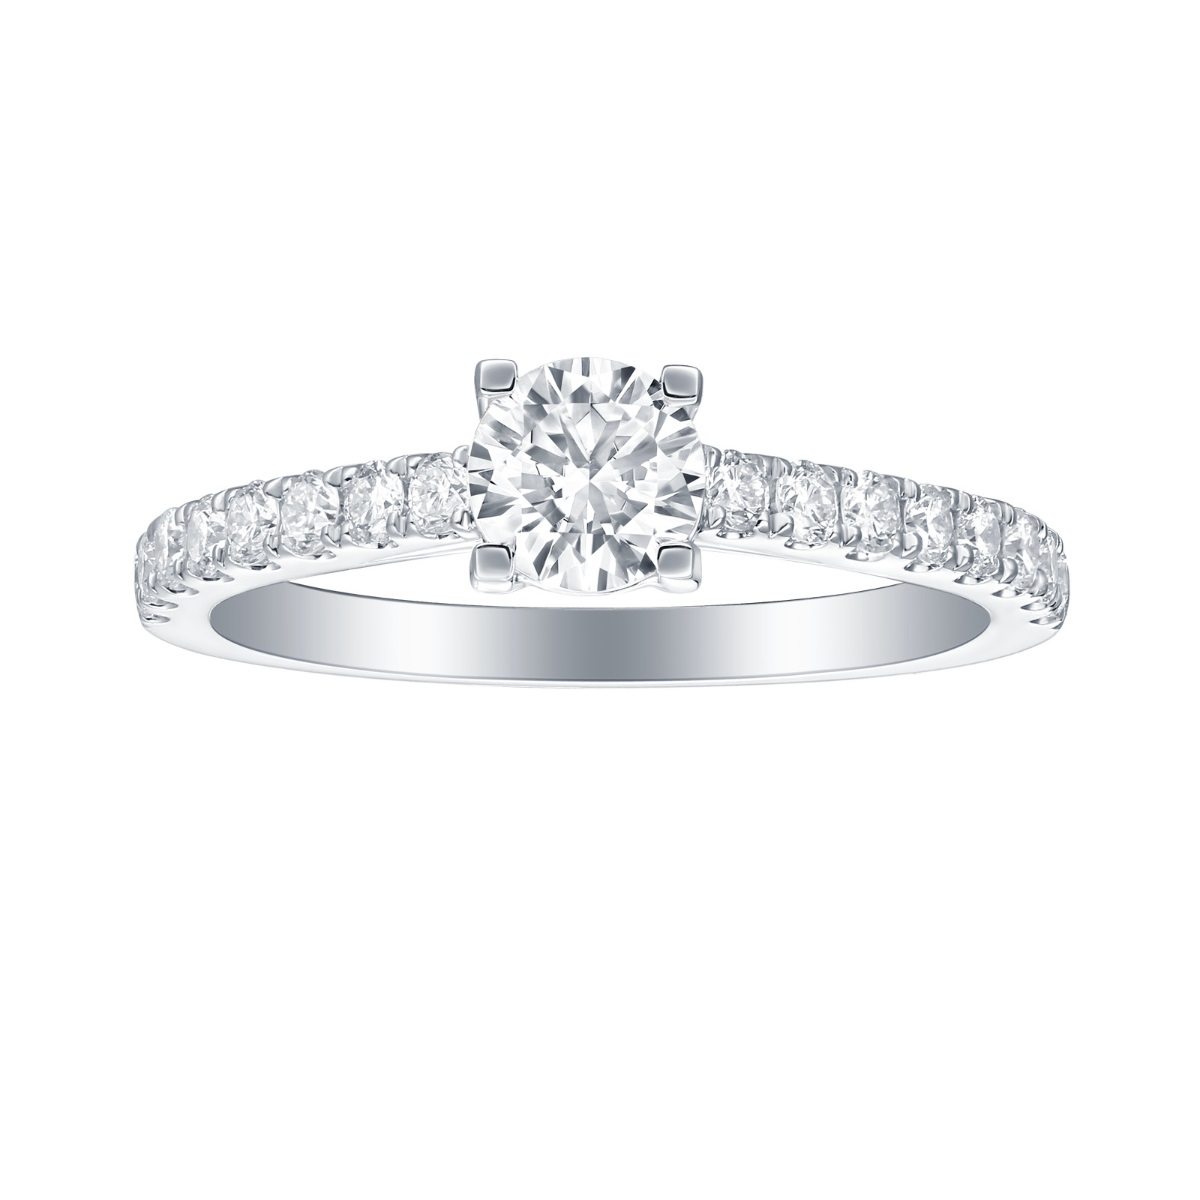 R35875WHT – 18K White Gold Diamond Ring, 1.38 TCW